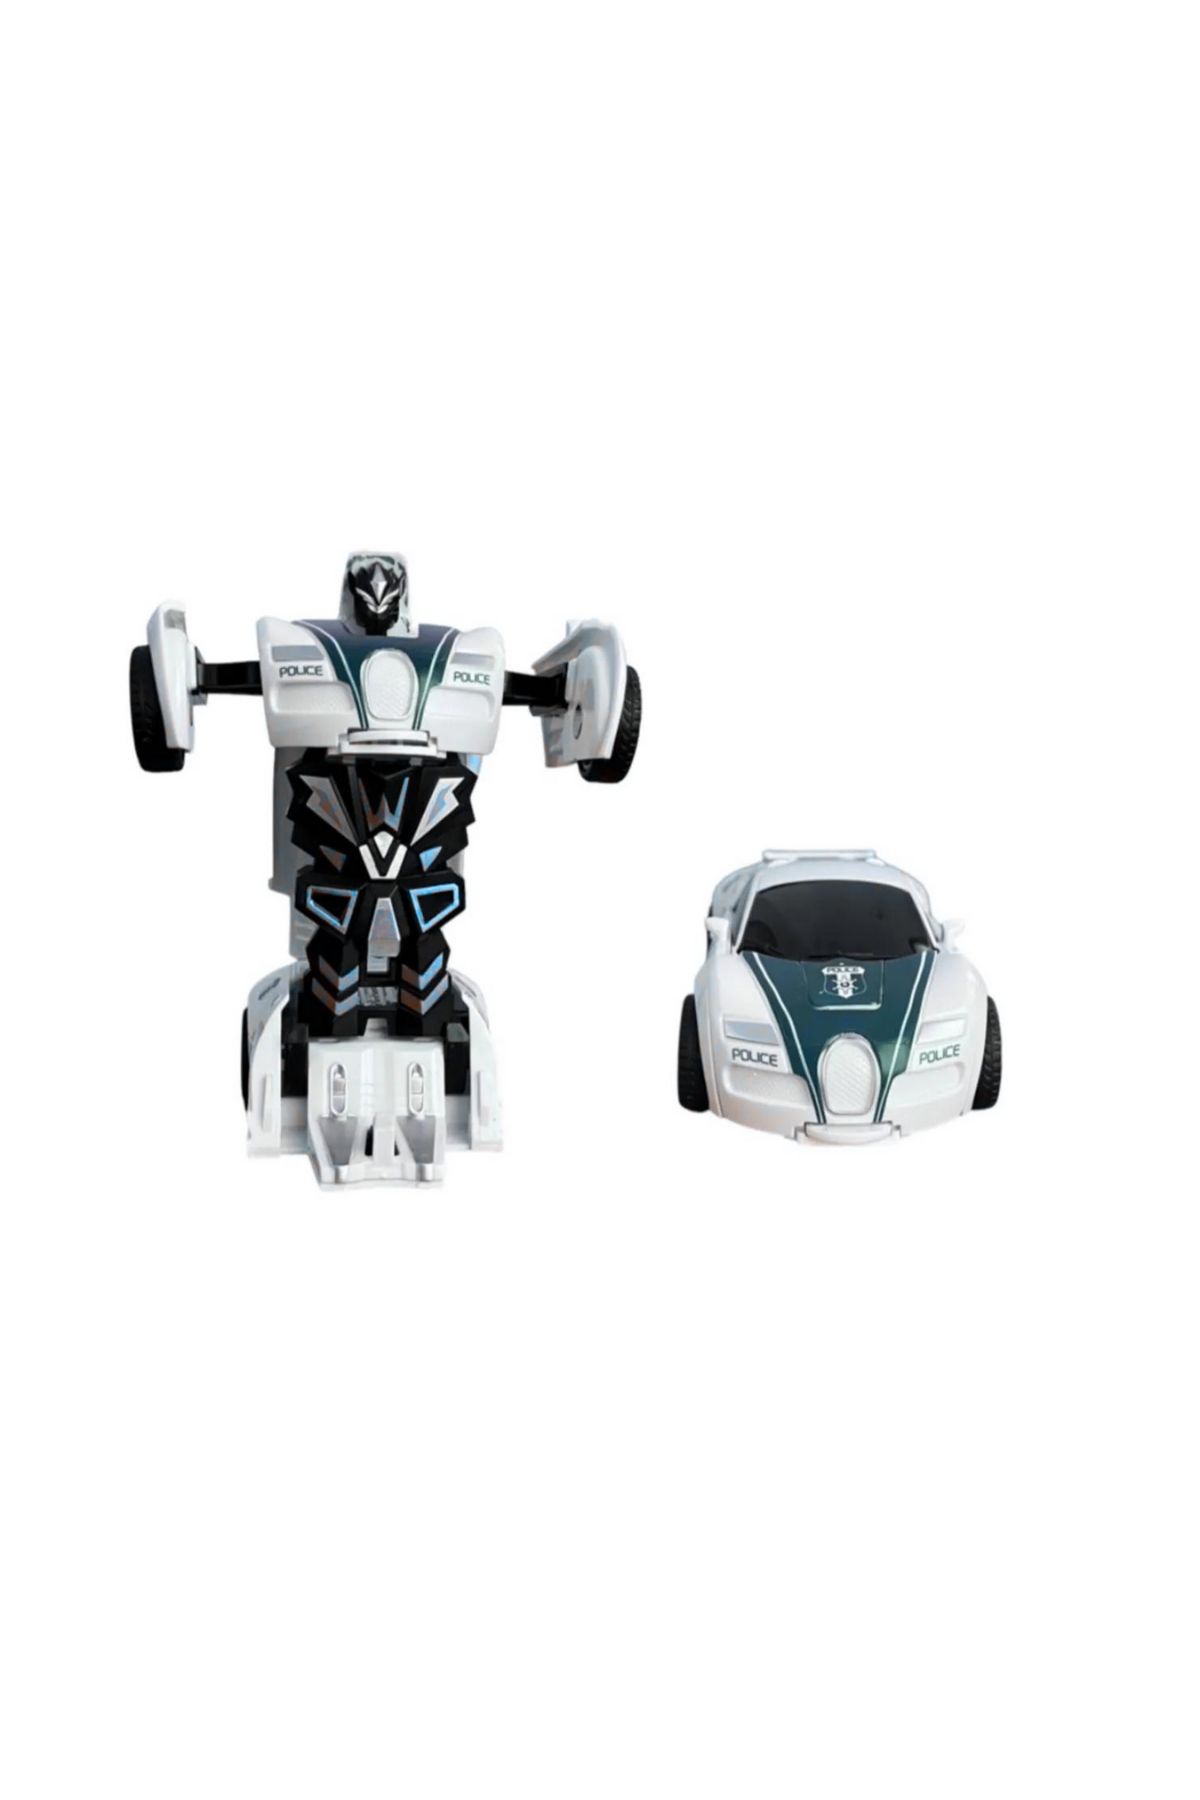 layfhex Transformers Bumblebee Robota Dönüşebilen Oyuncak Polis Araba Beyaz Mavi